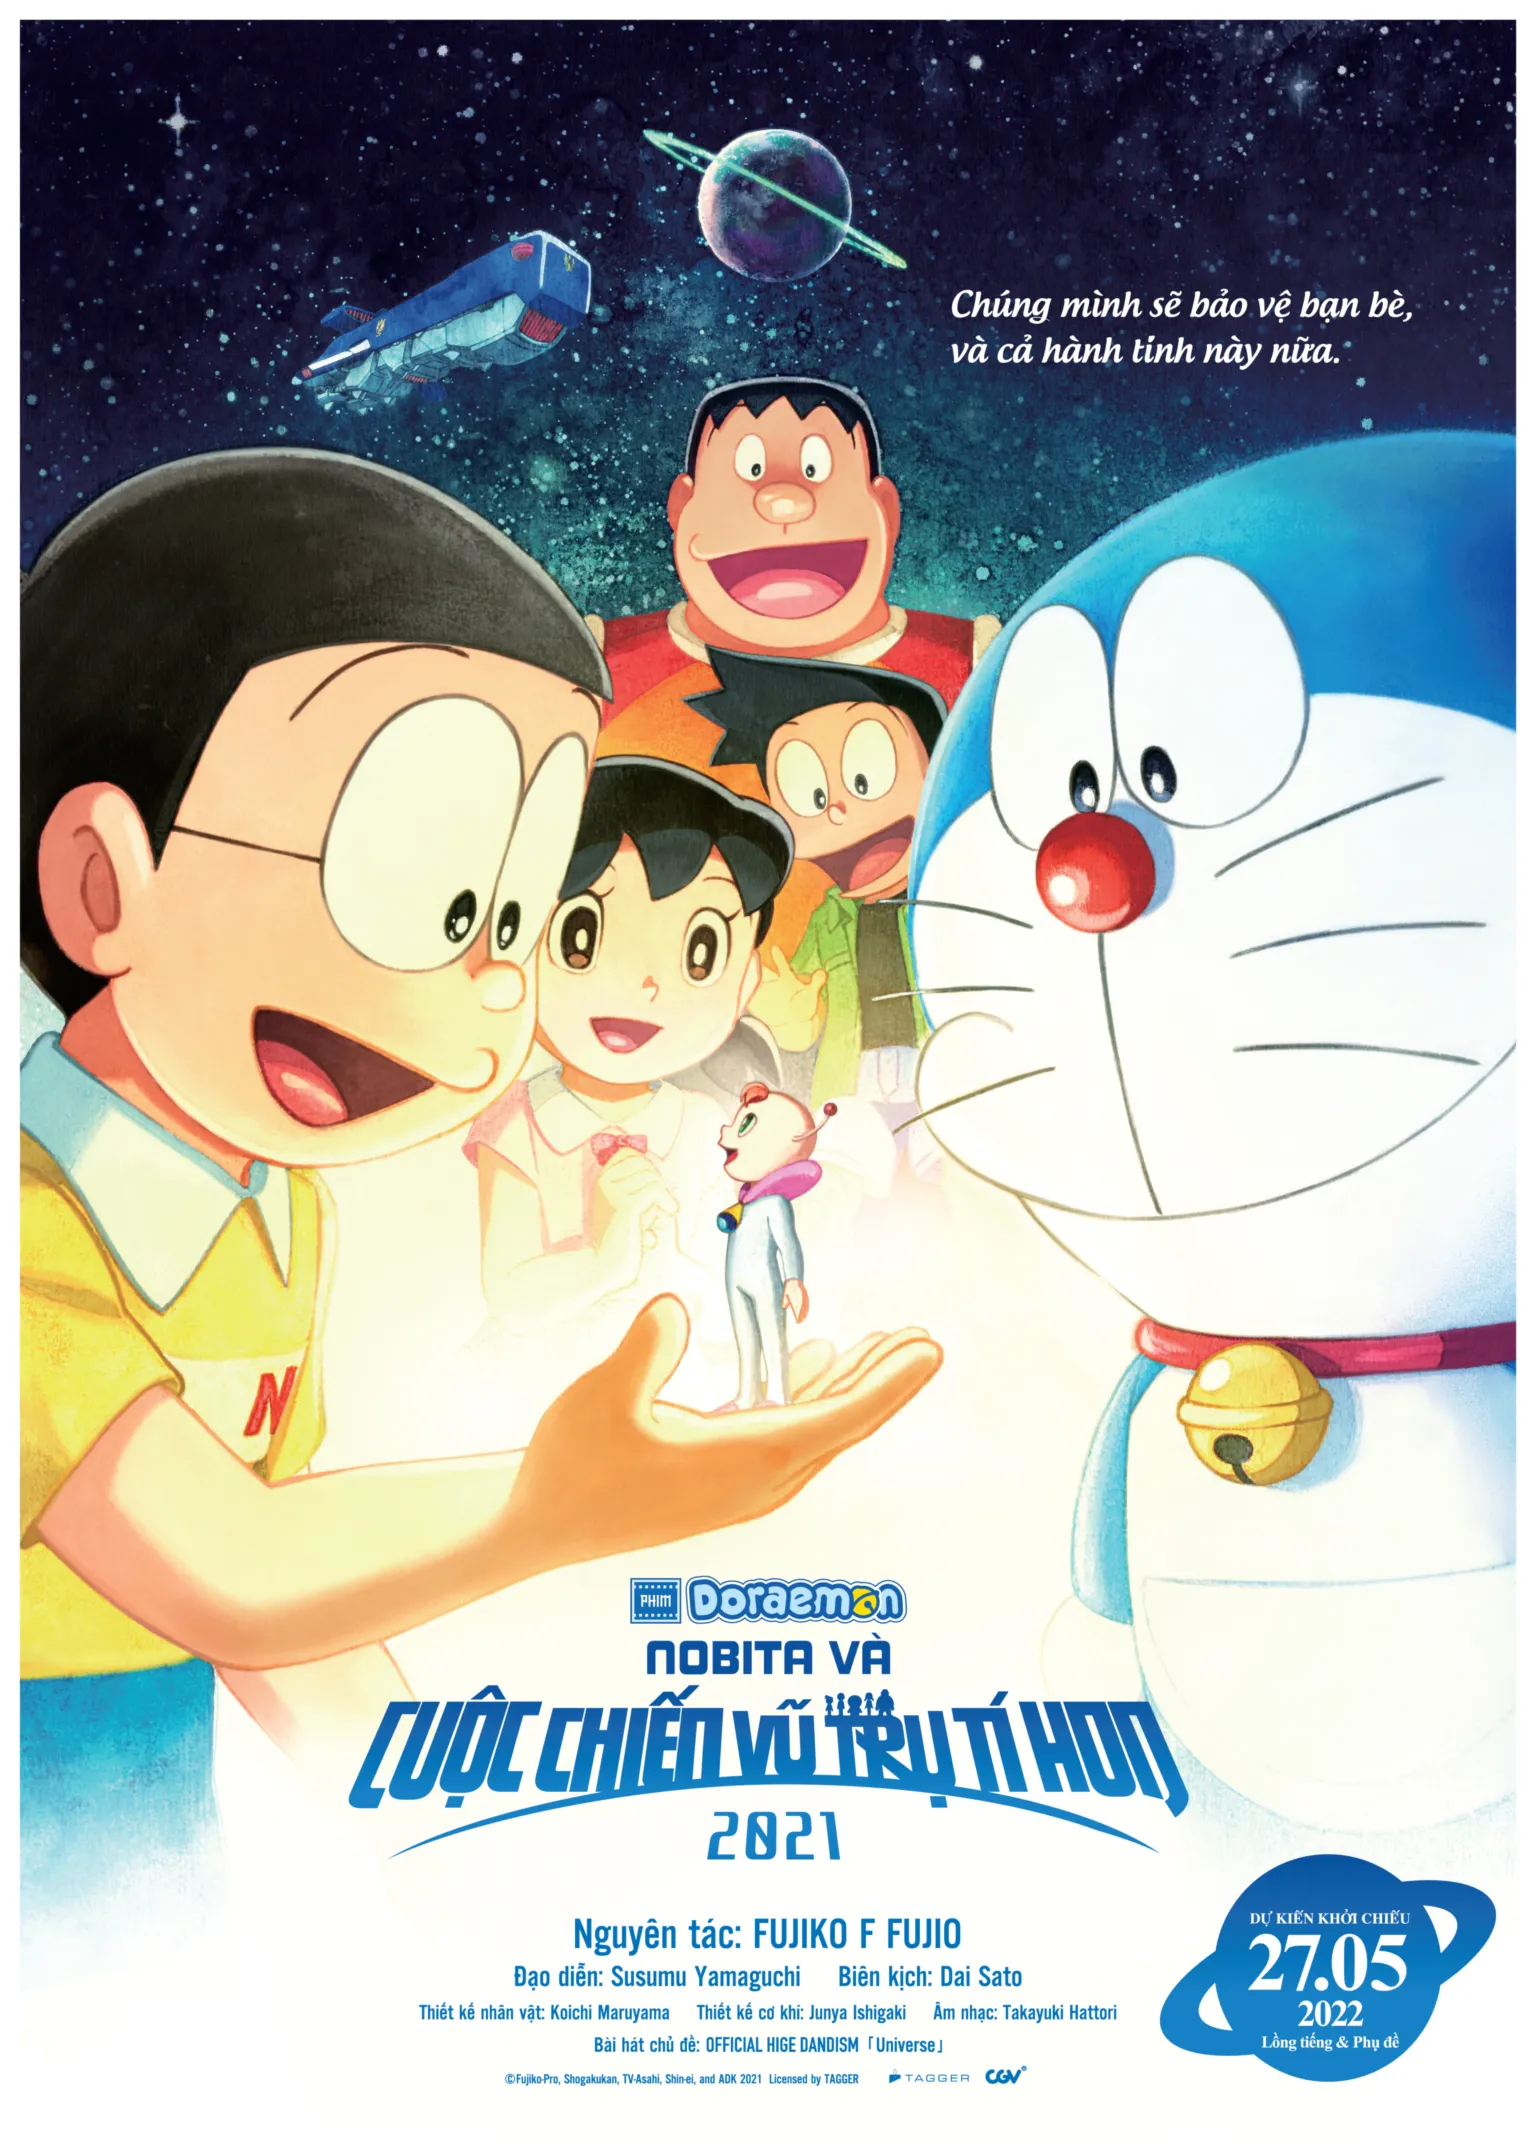 Poster Phim Điện Ảnh Doraemon: Nobita Và Cuộc Chiến Vũ Trụ Tí Hon 2021